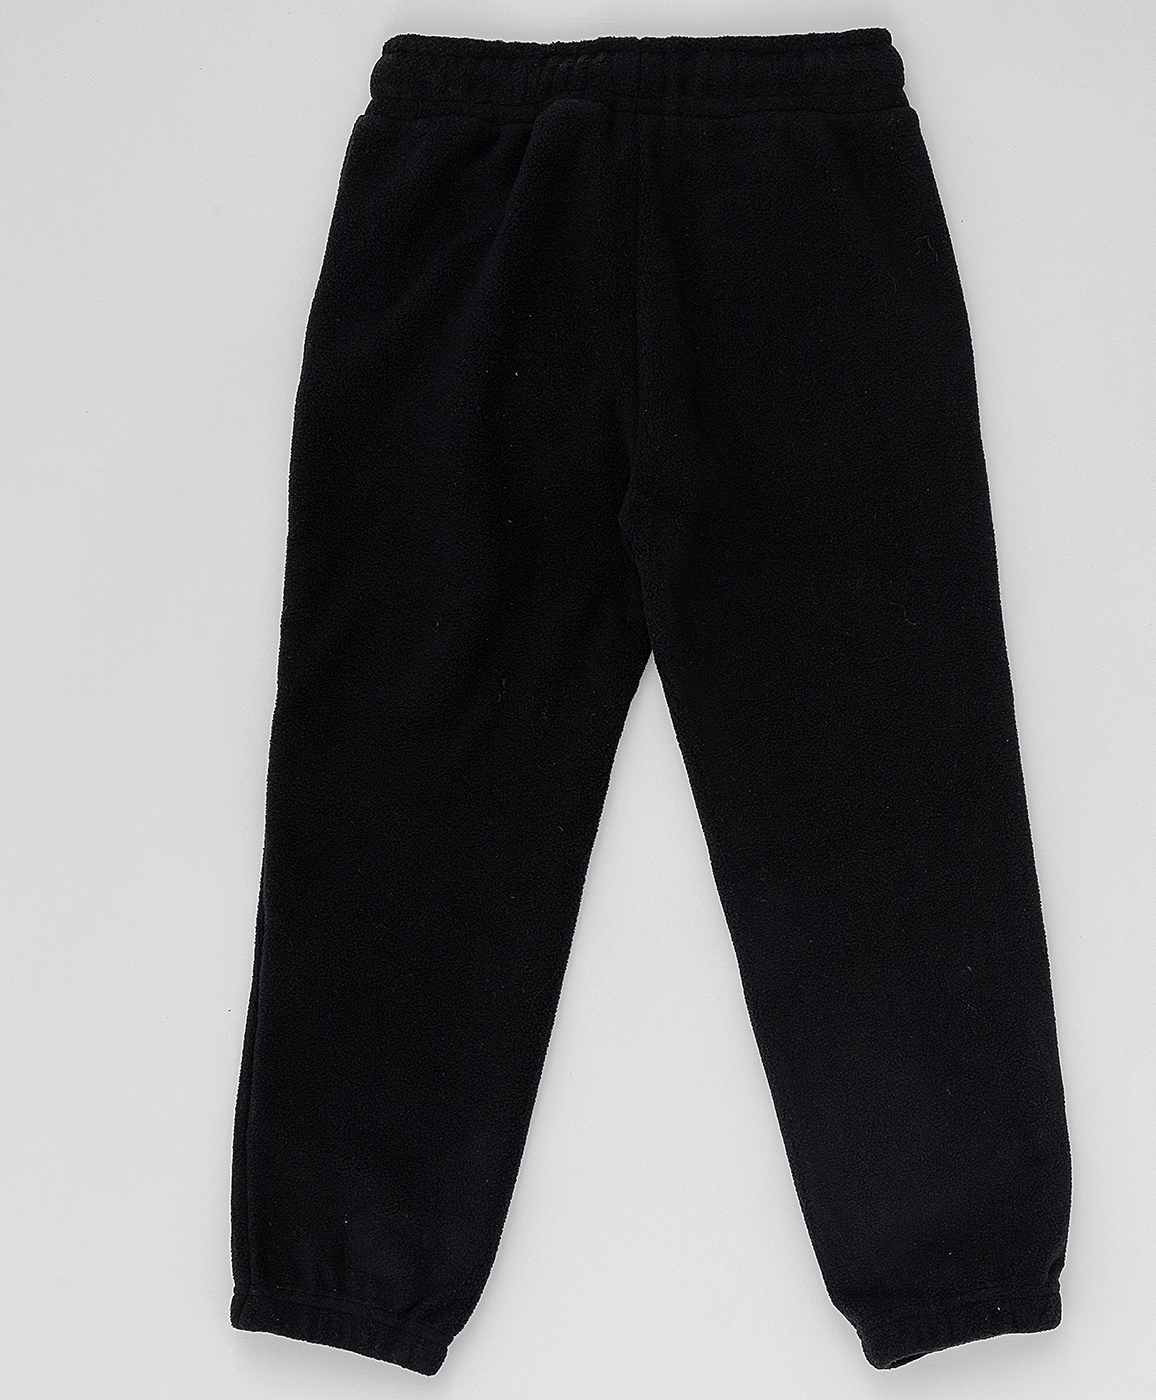 Черные флисовые брюки Button Blue 220BBBA56010800, размер 98, цвет черный на резинке - фото 2